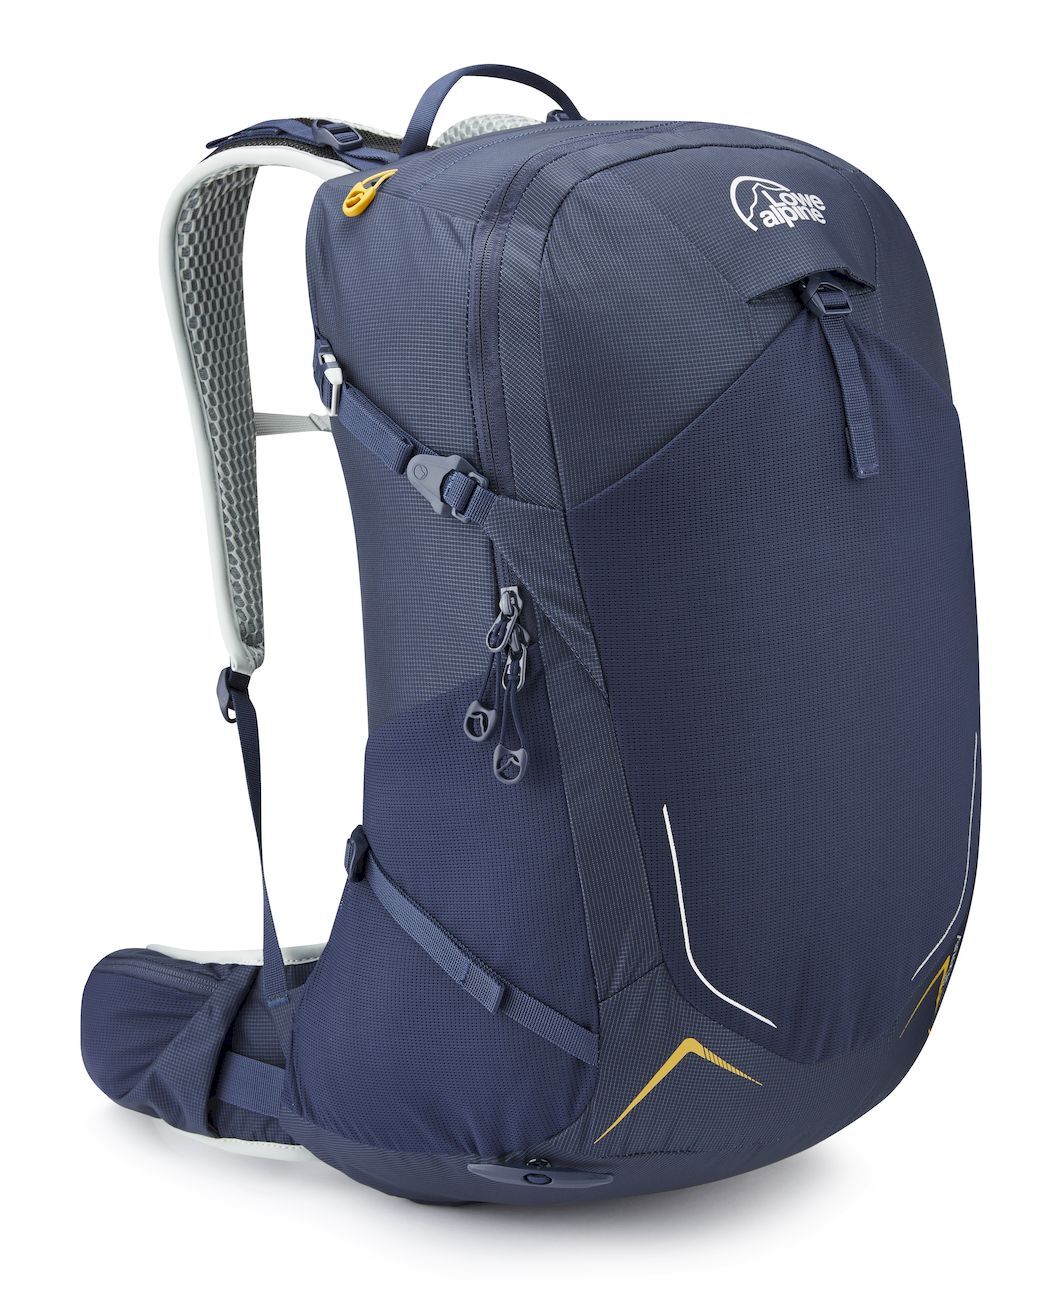 Lowe Alpine AirZone Trek 28 - Walking backpack - Men's